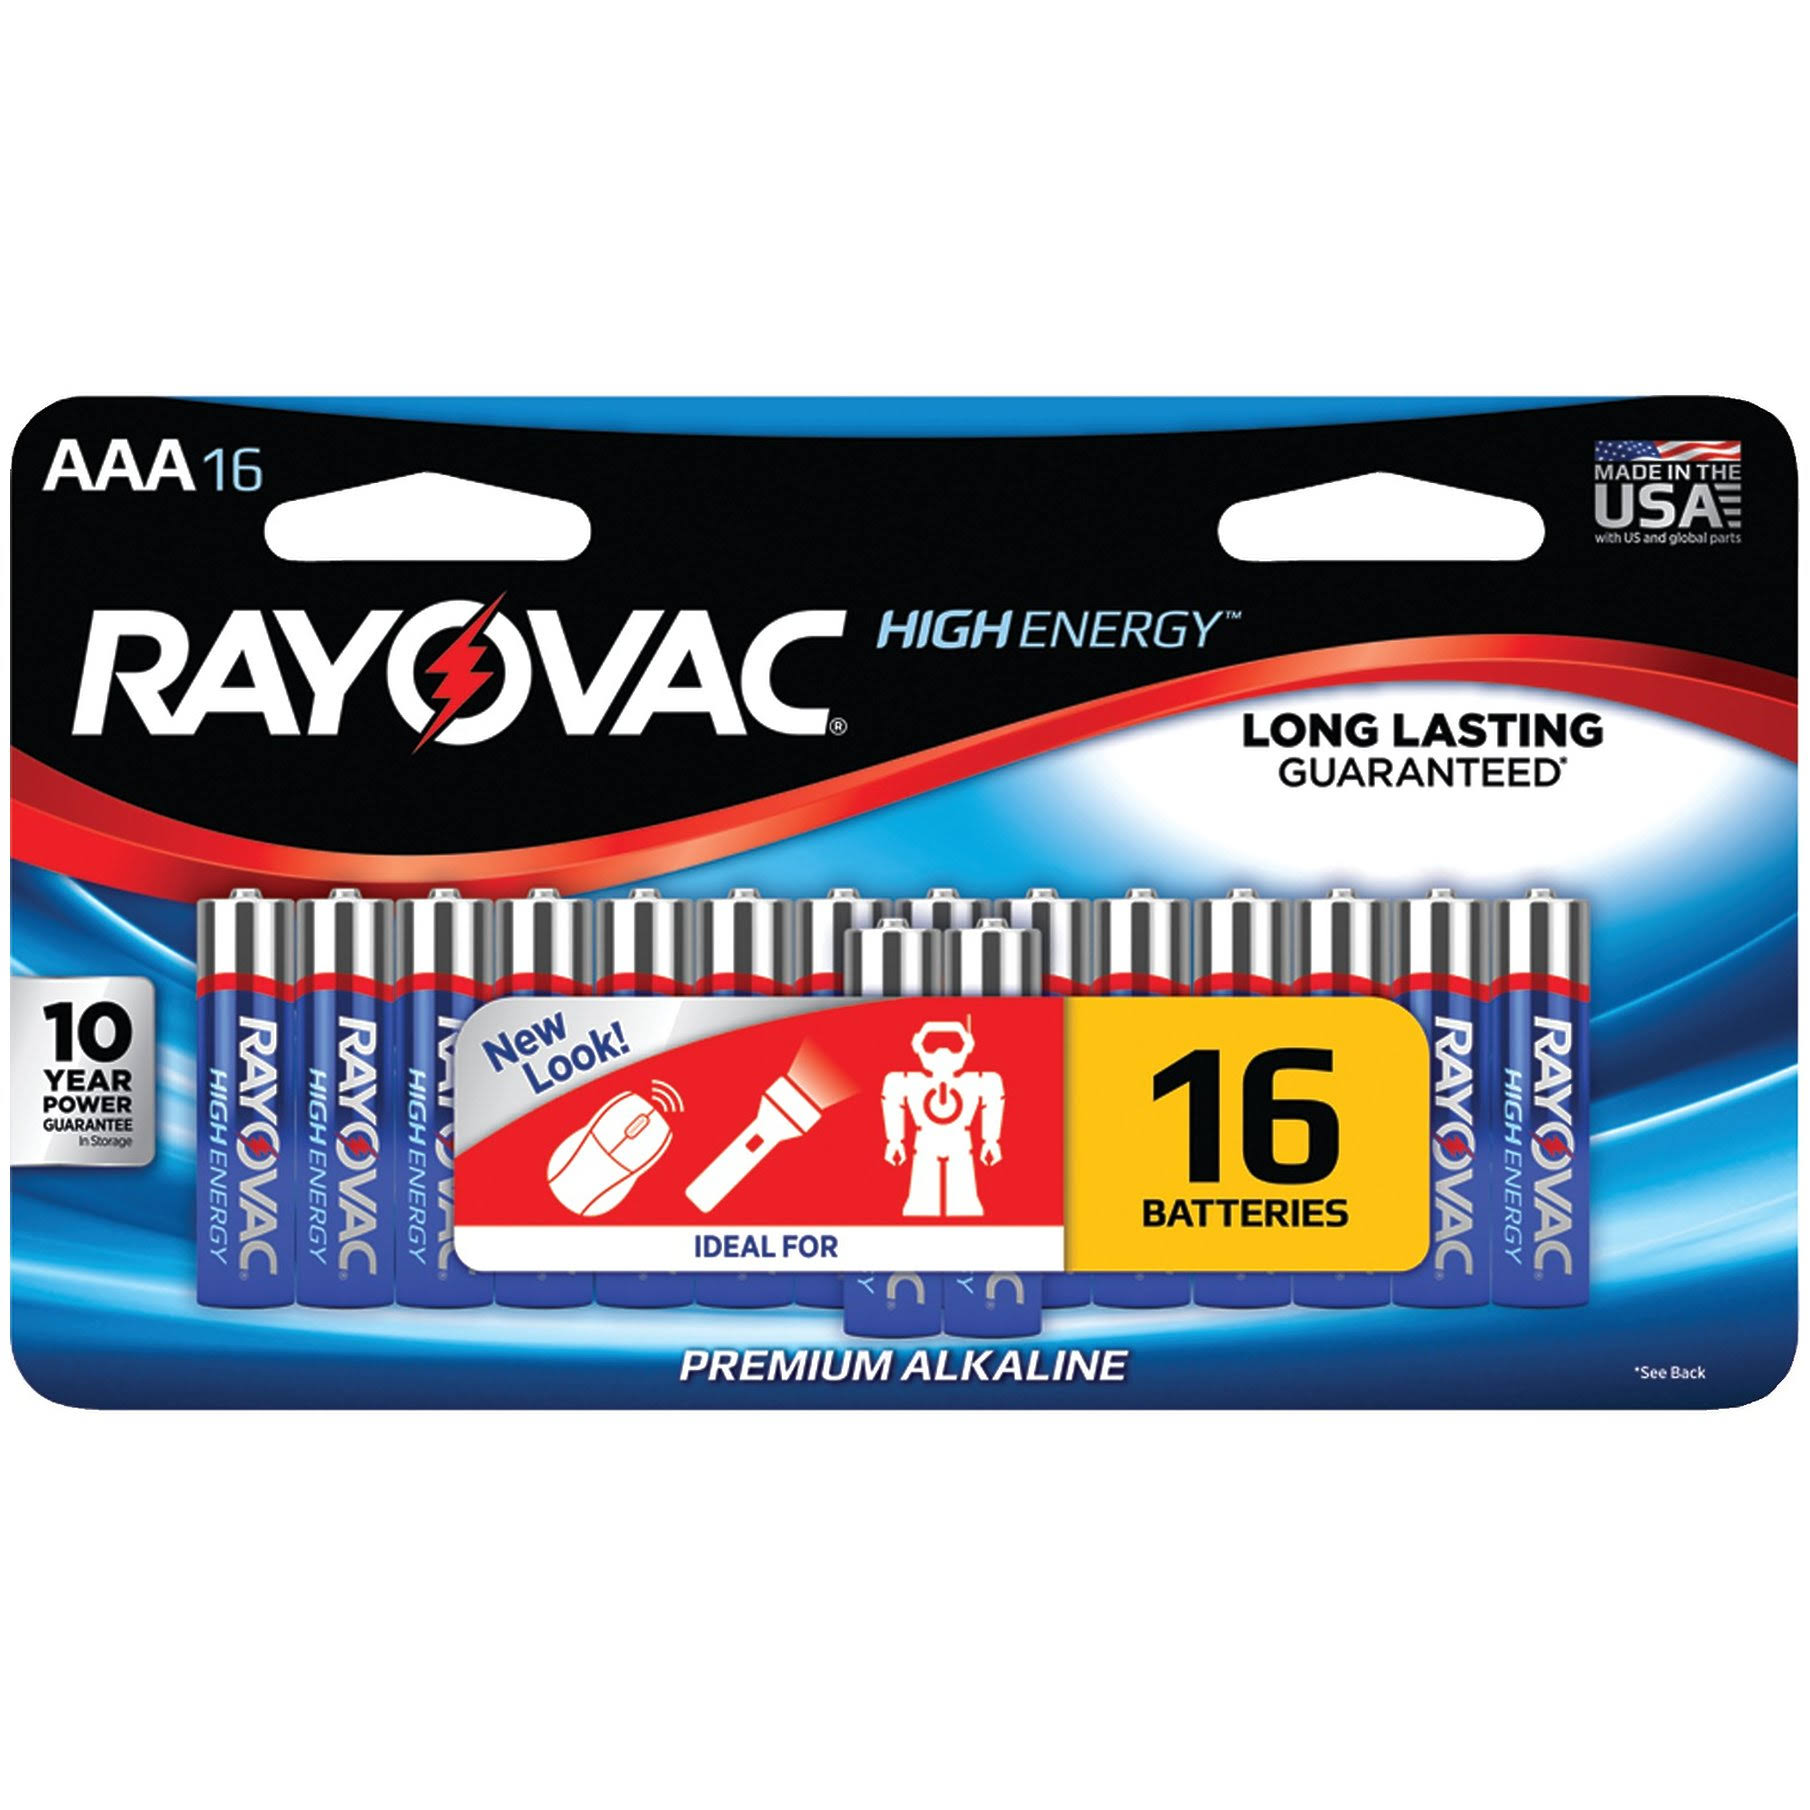 Rayovac AAA Alkaline Batteries - 1.5V, 16pk